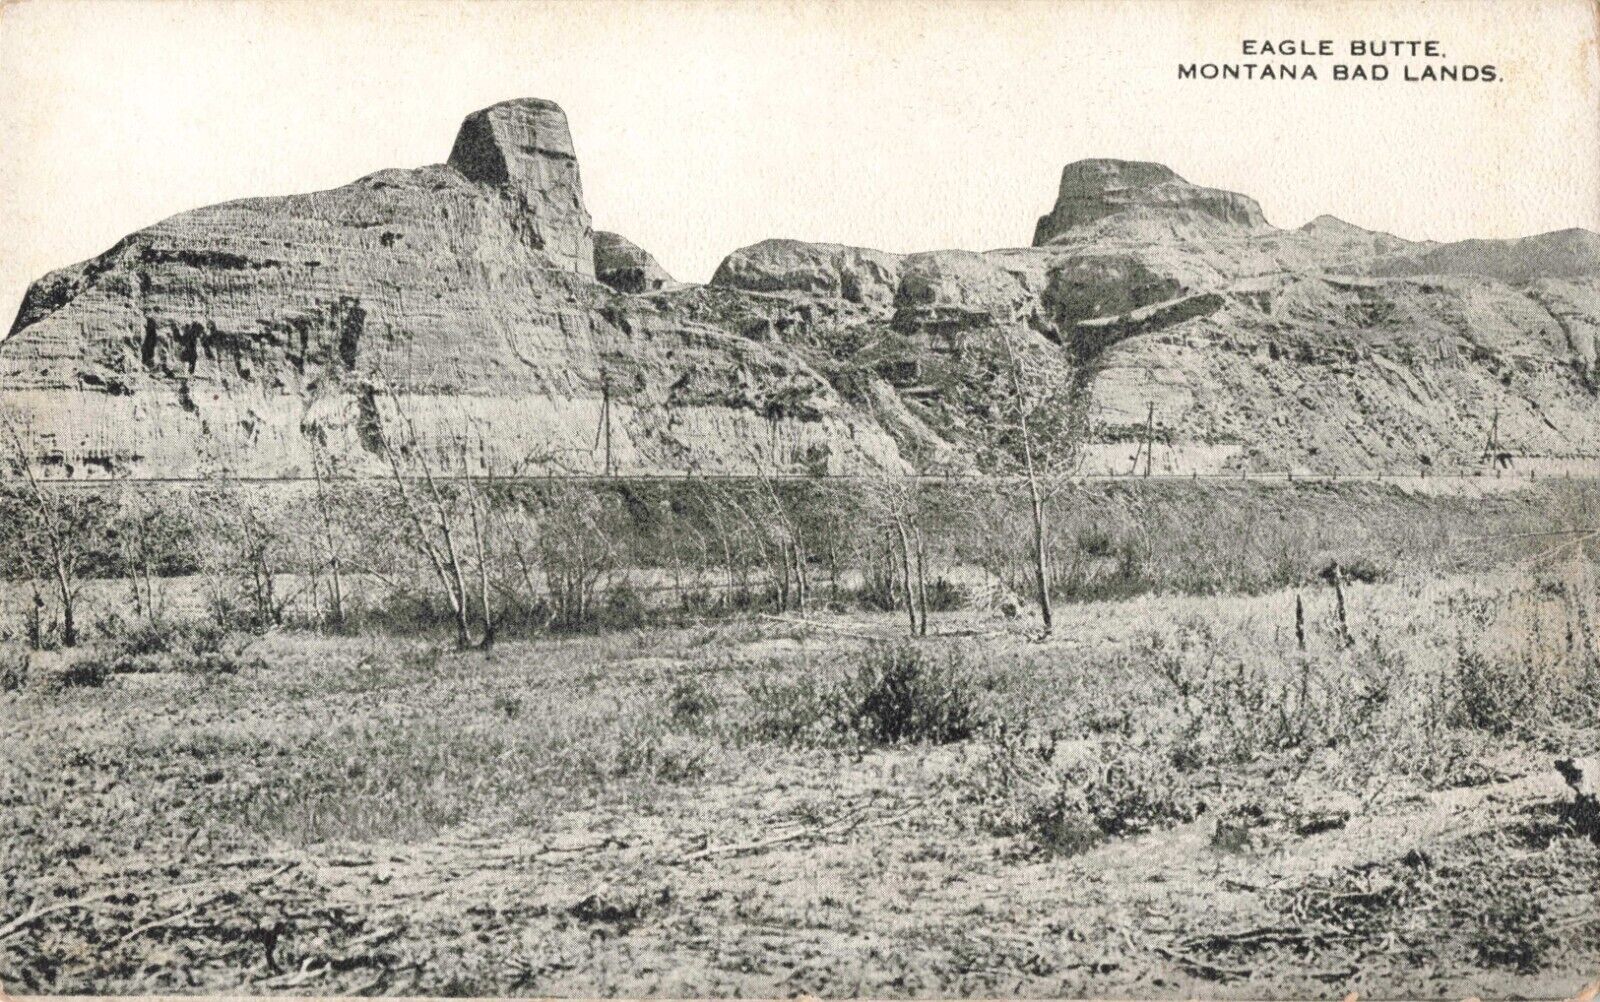 Glendive MT, Eagle Butte, Montana Bad Lands, Vintage Postcard